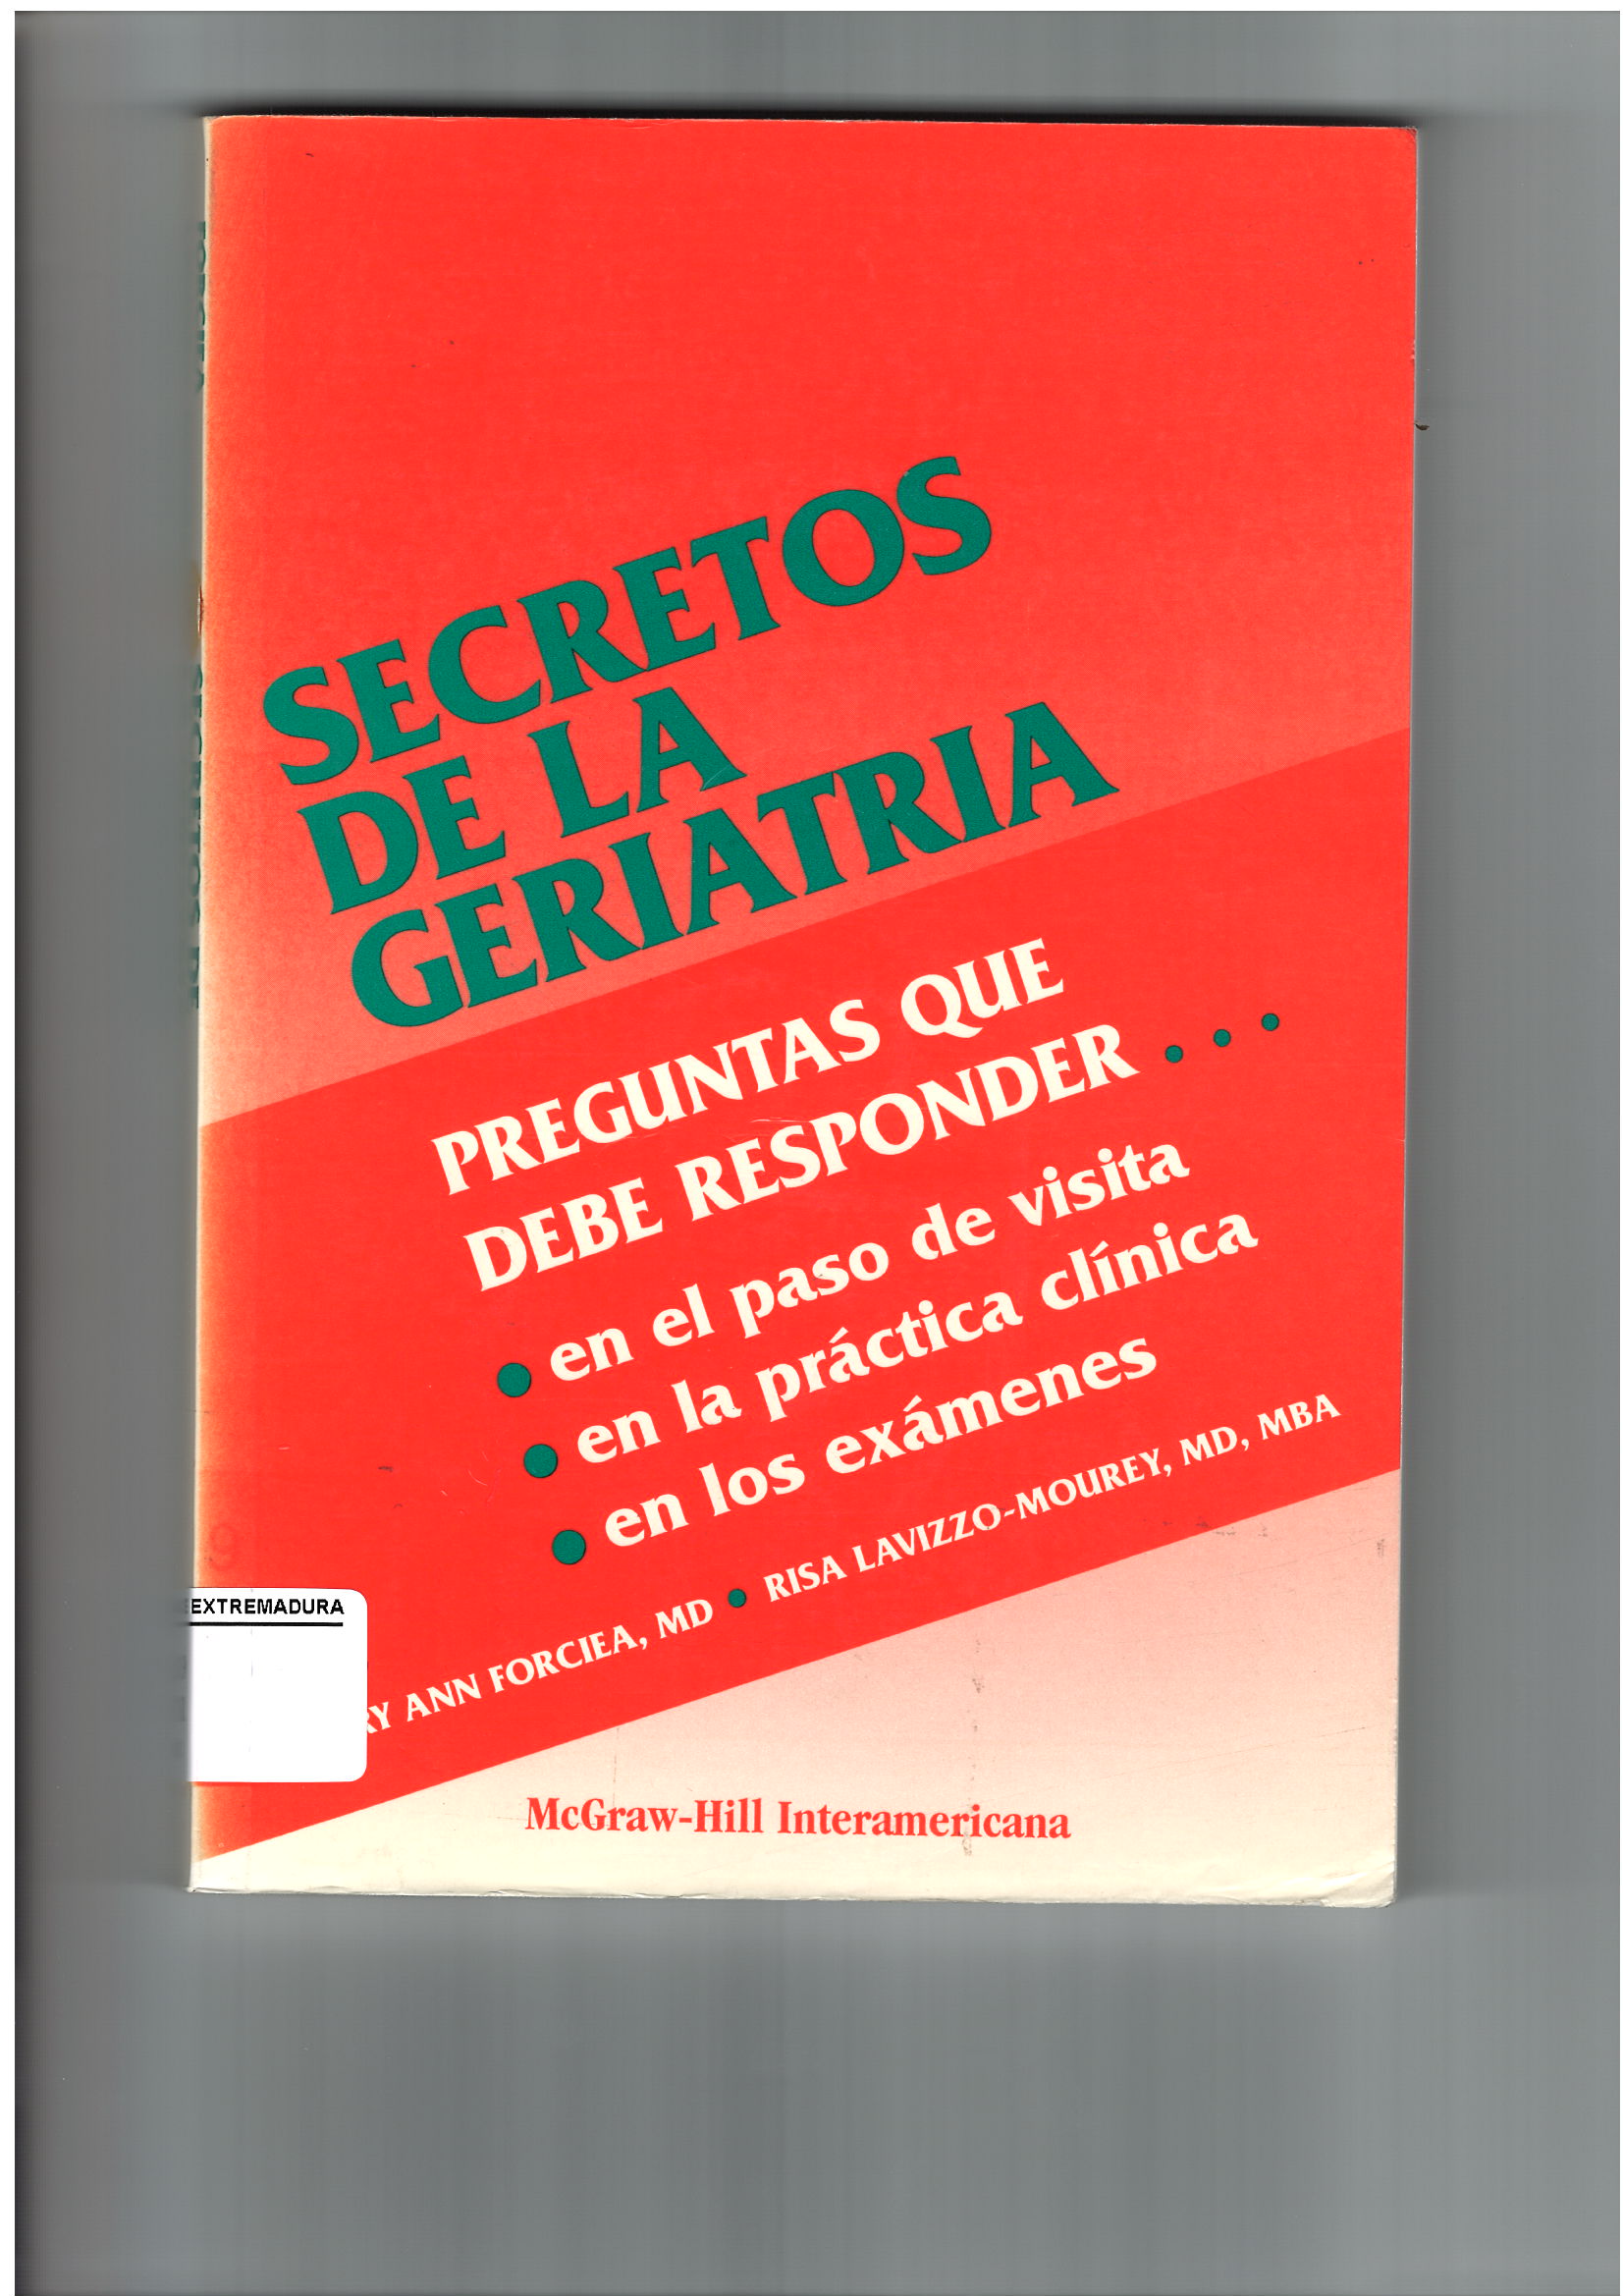 Imagen de portada del libro Secretos de la geriatría.